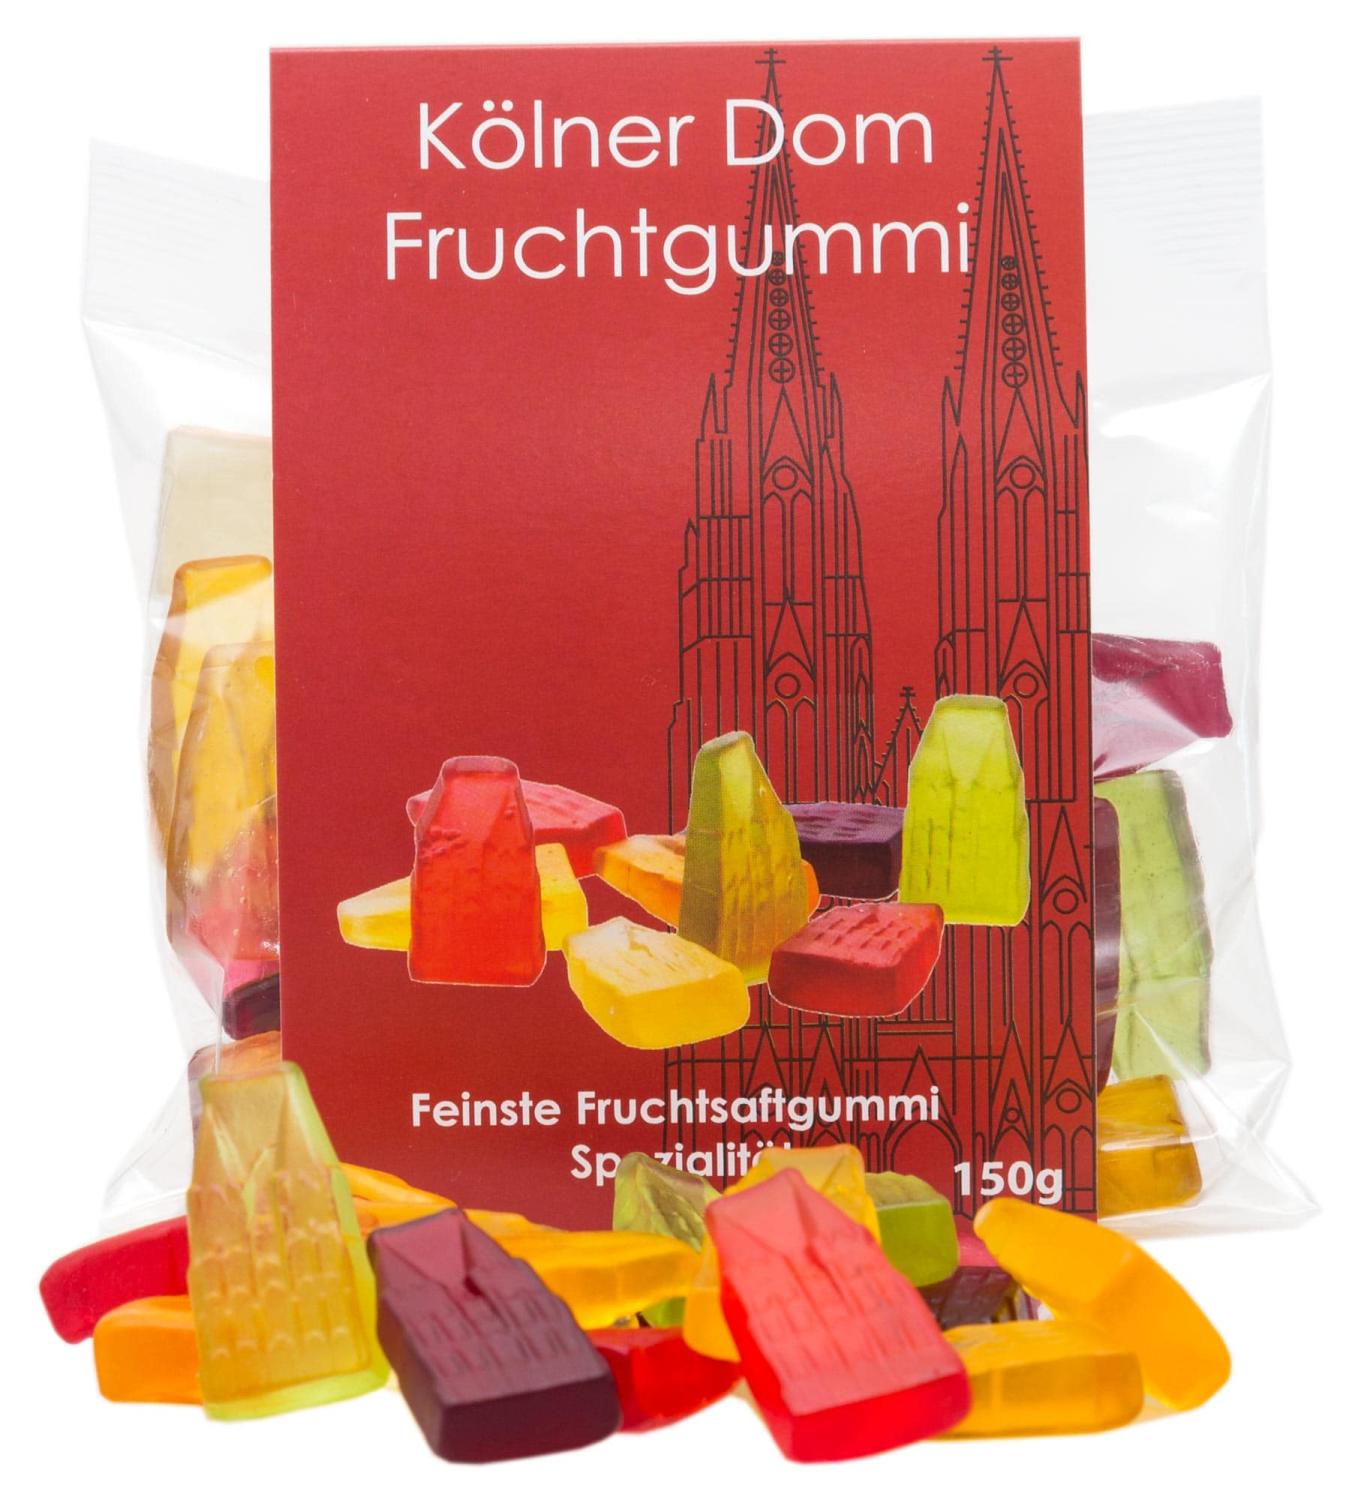 Fruchtgummi n Form des Kölner Doms im Tütchen